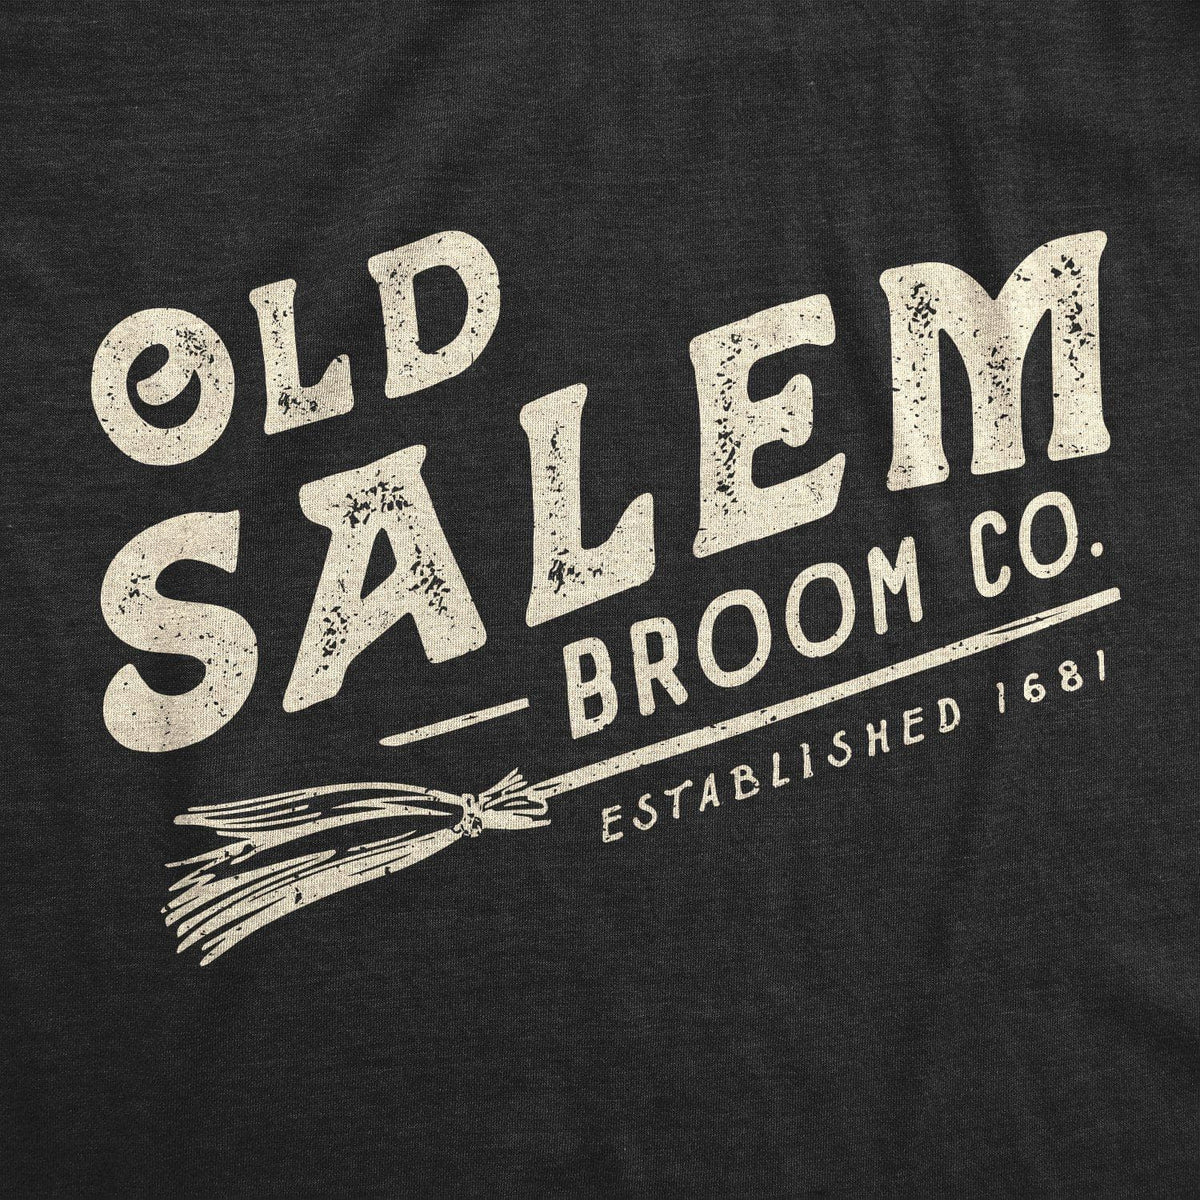 Old Salem Broom Co. Men&#39;s Tshirt  -  Crazy Dog T-Shirts